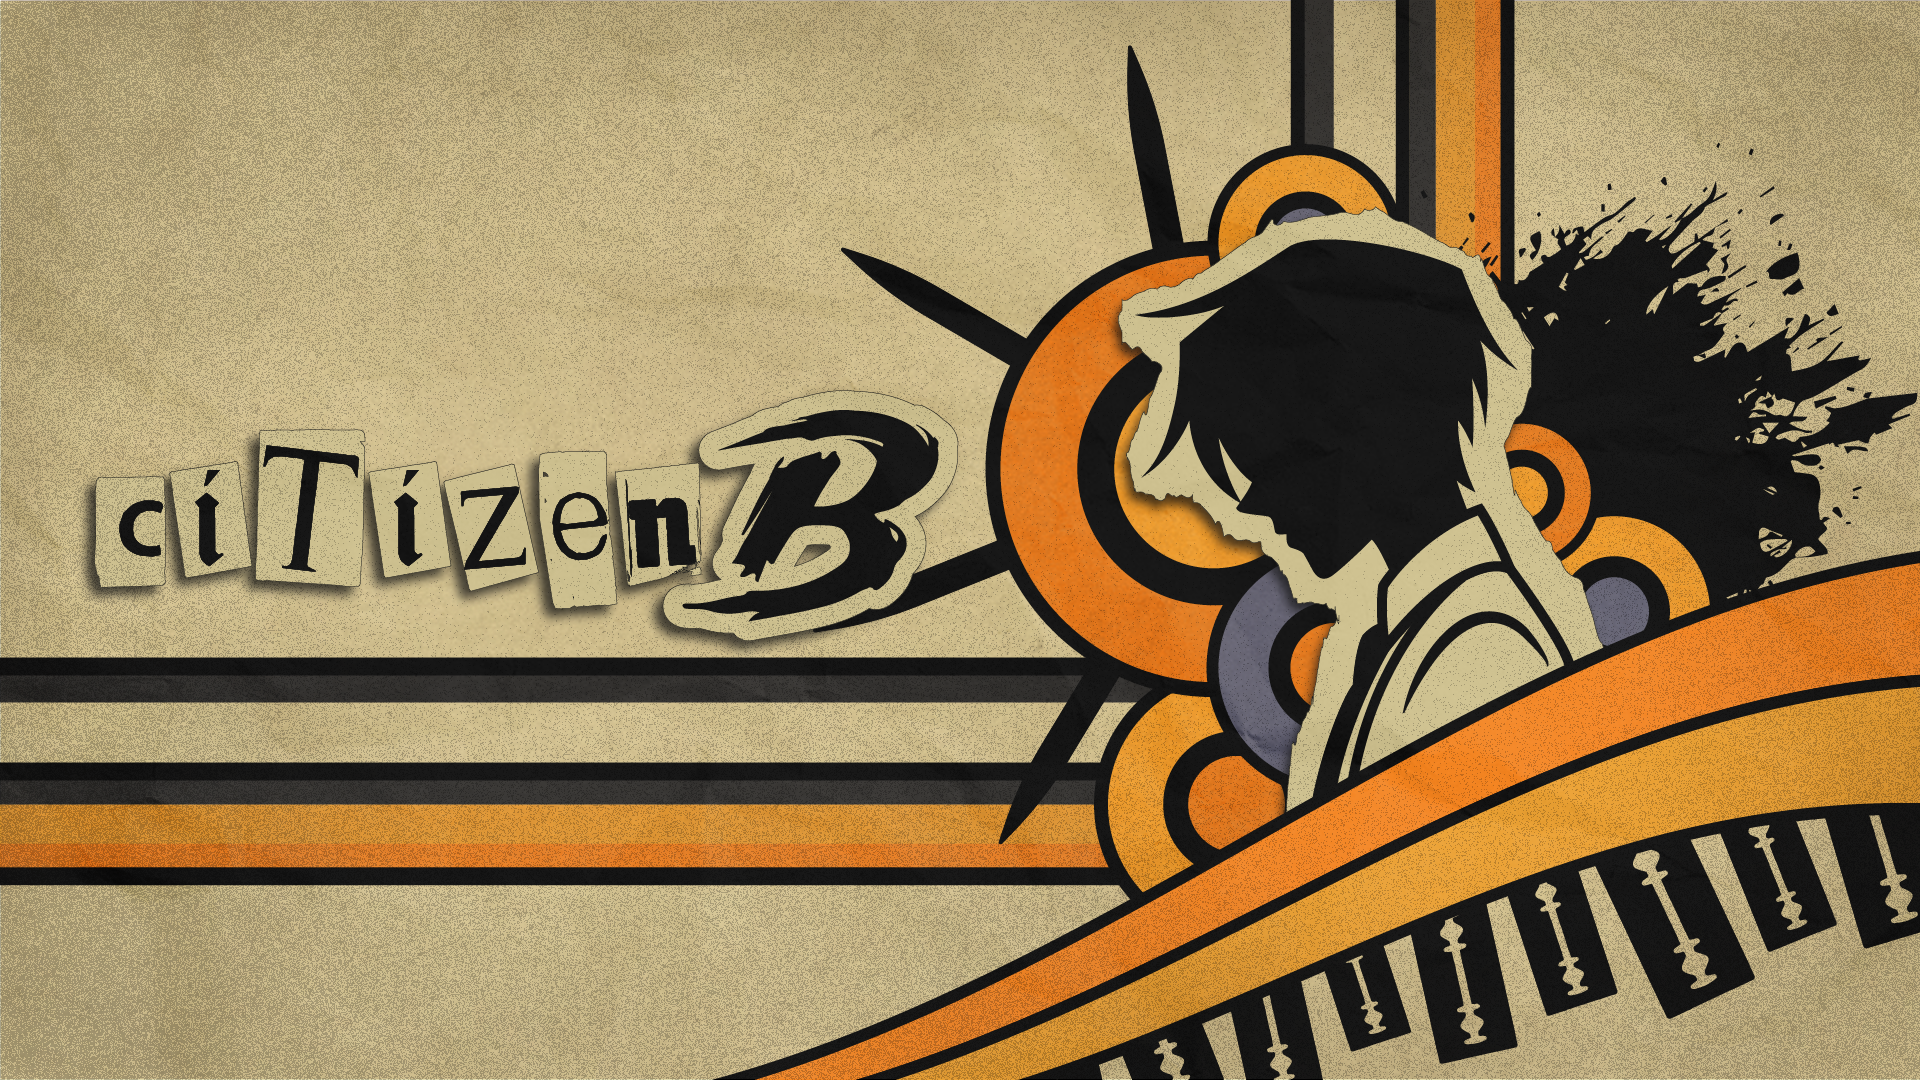 Citizen B (versión alpha)